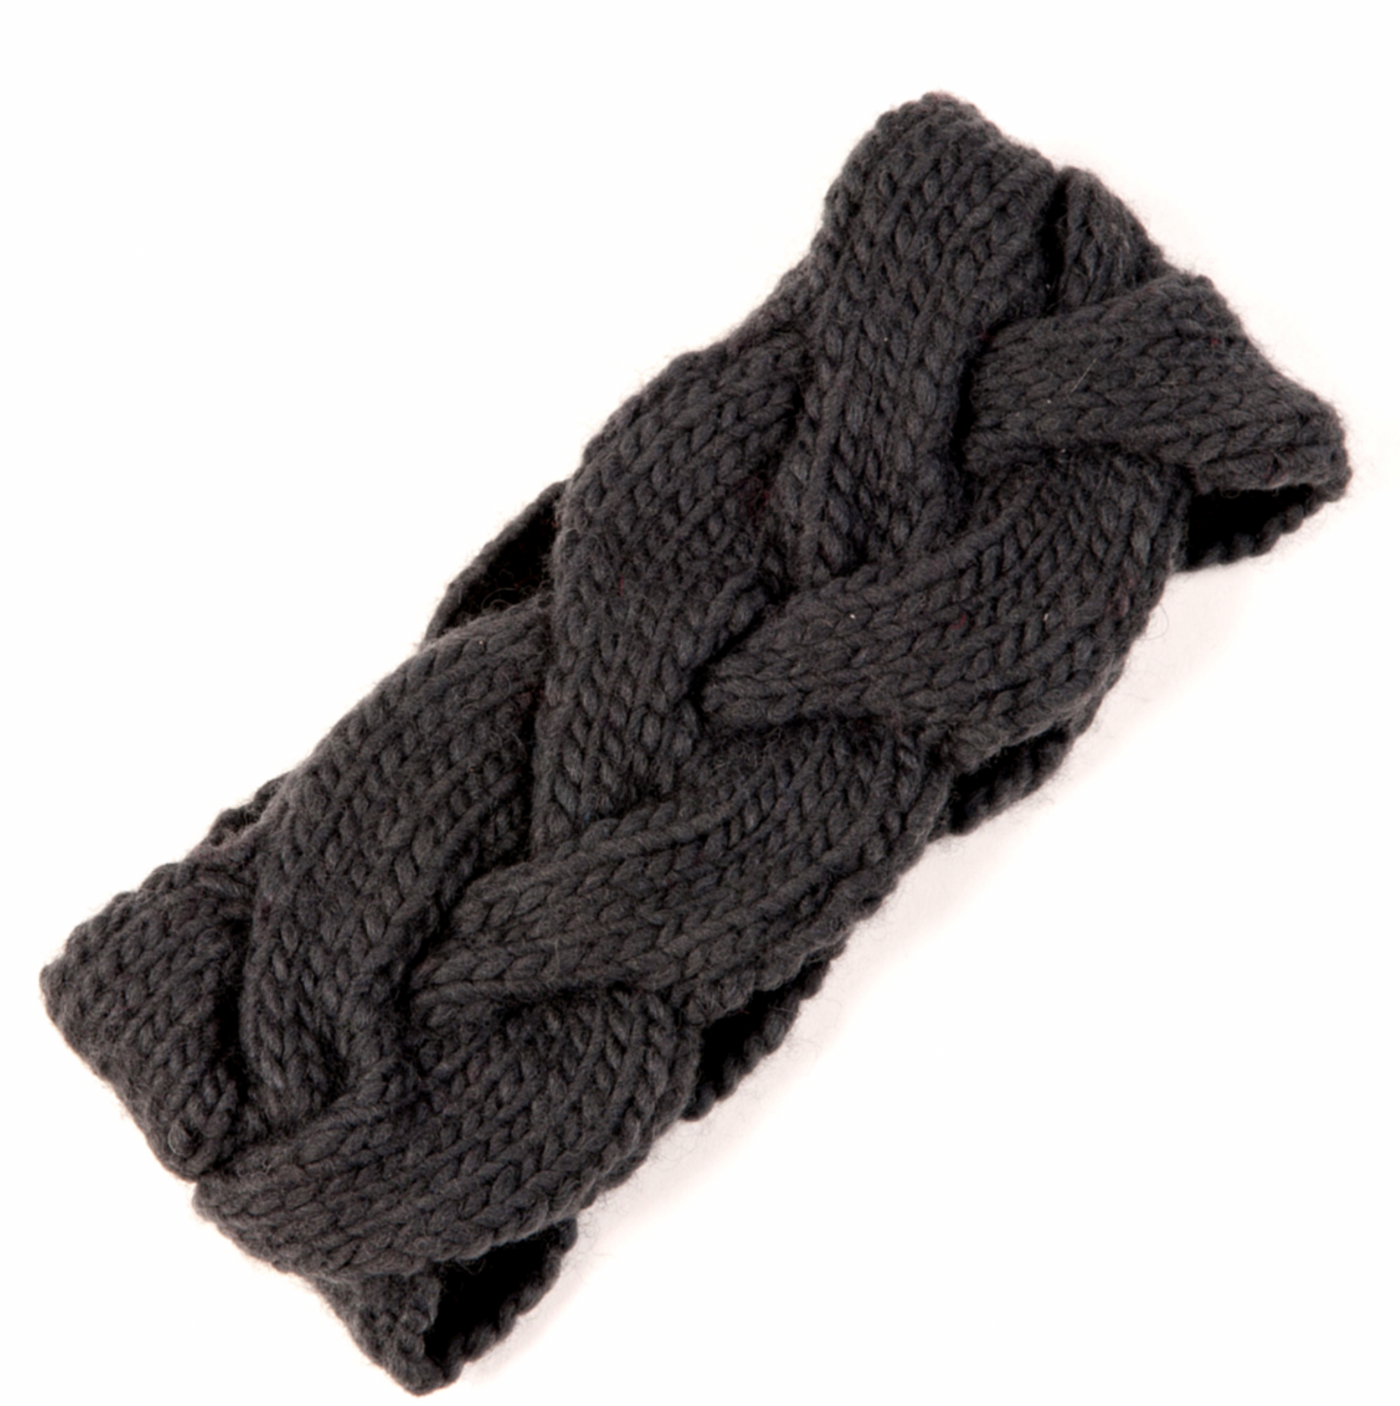 Merino Wool Braided Headband - Black